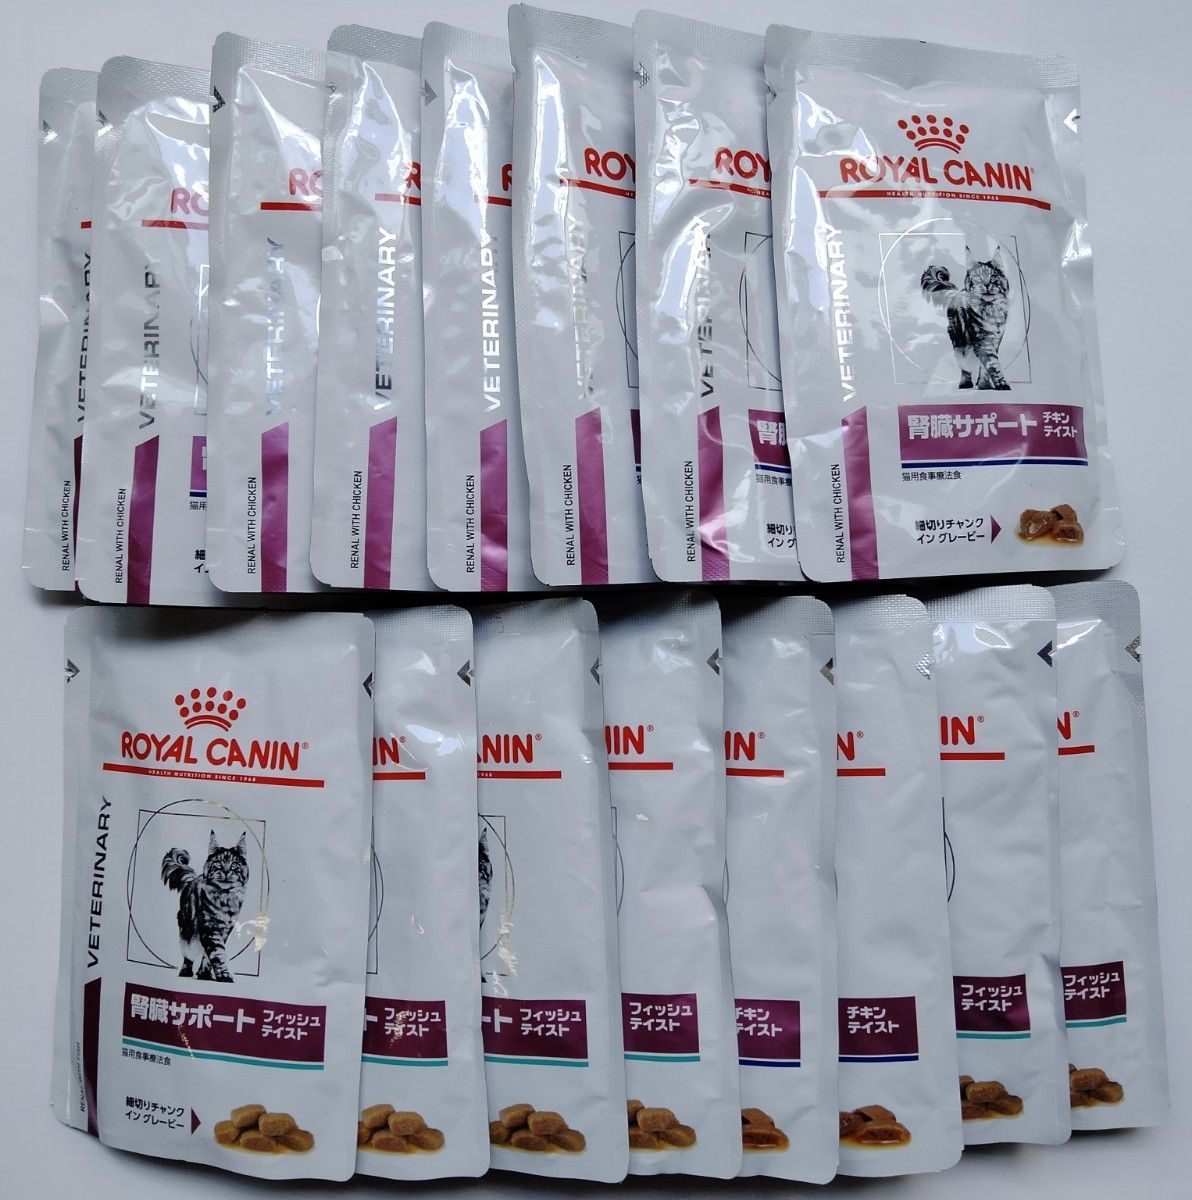 ロイヤルカナン 腎臓サポート フィッシュテイスト 7袋+チキンテイスト 9袋 合計16袋(1袋85g) 猫用パウチ